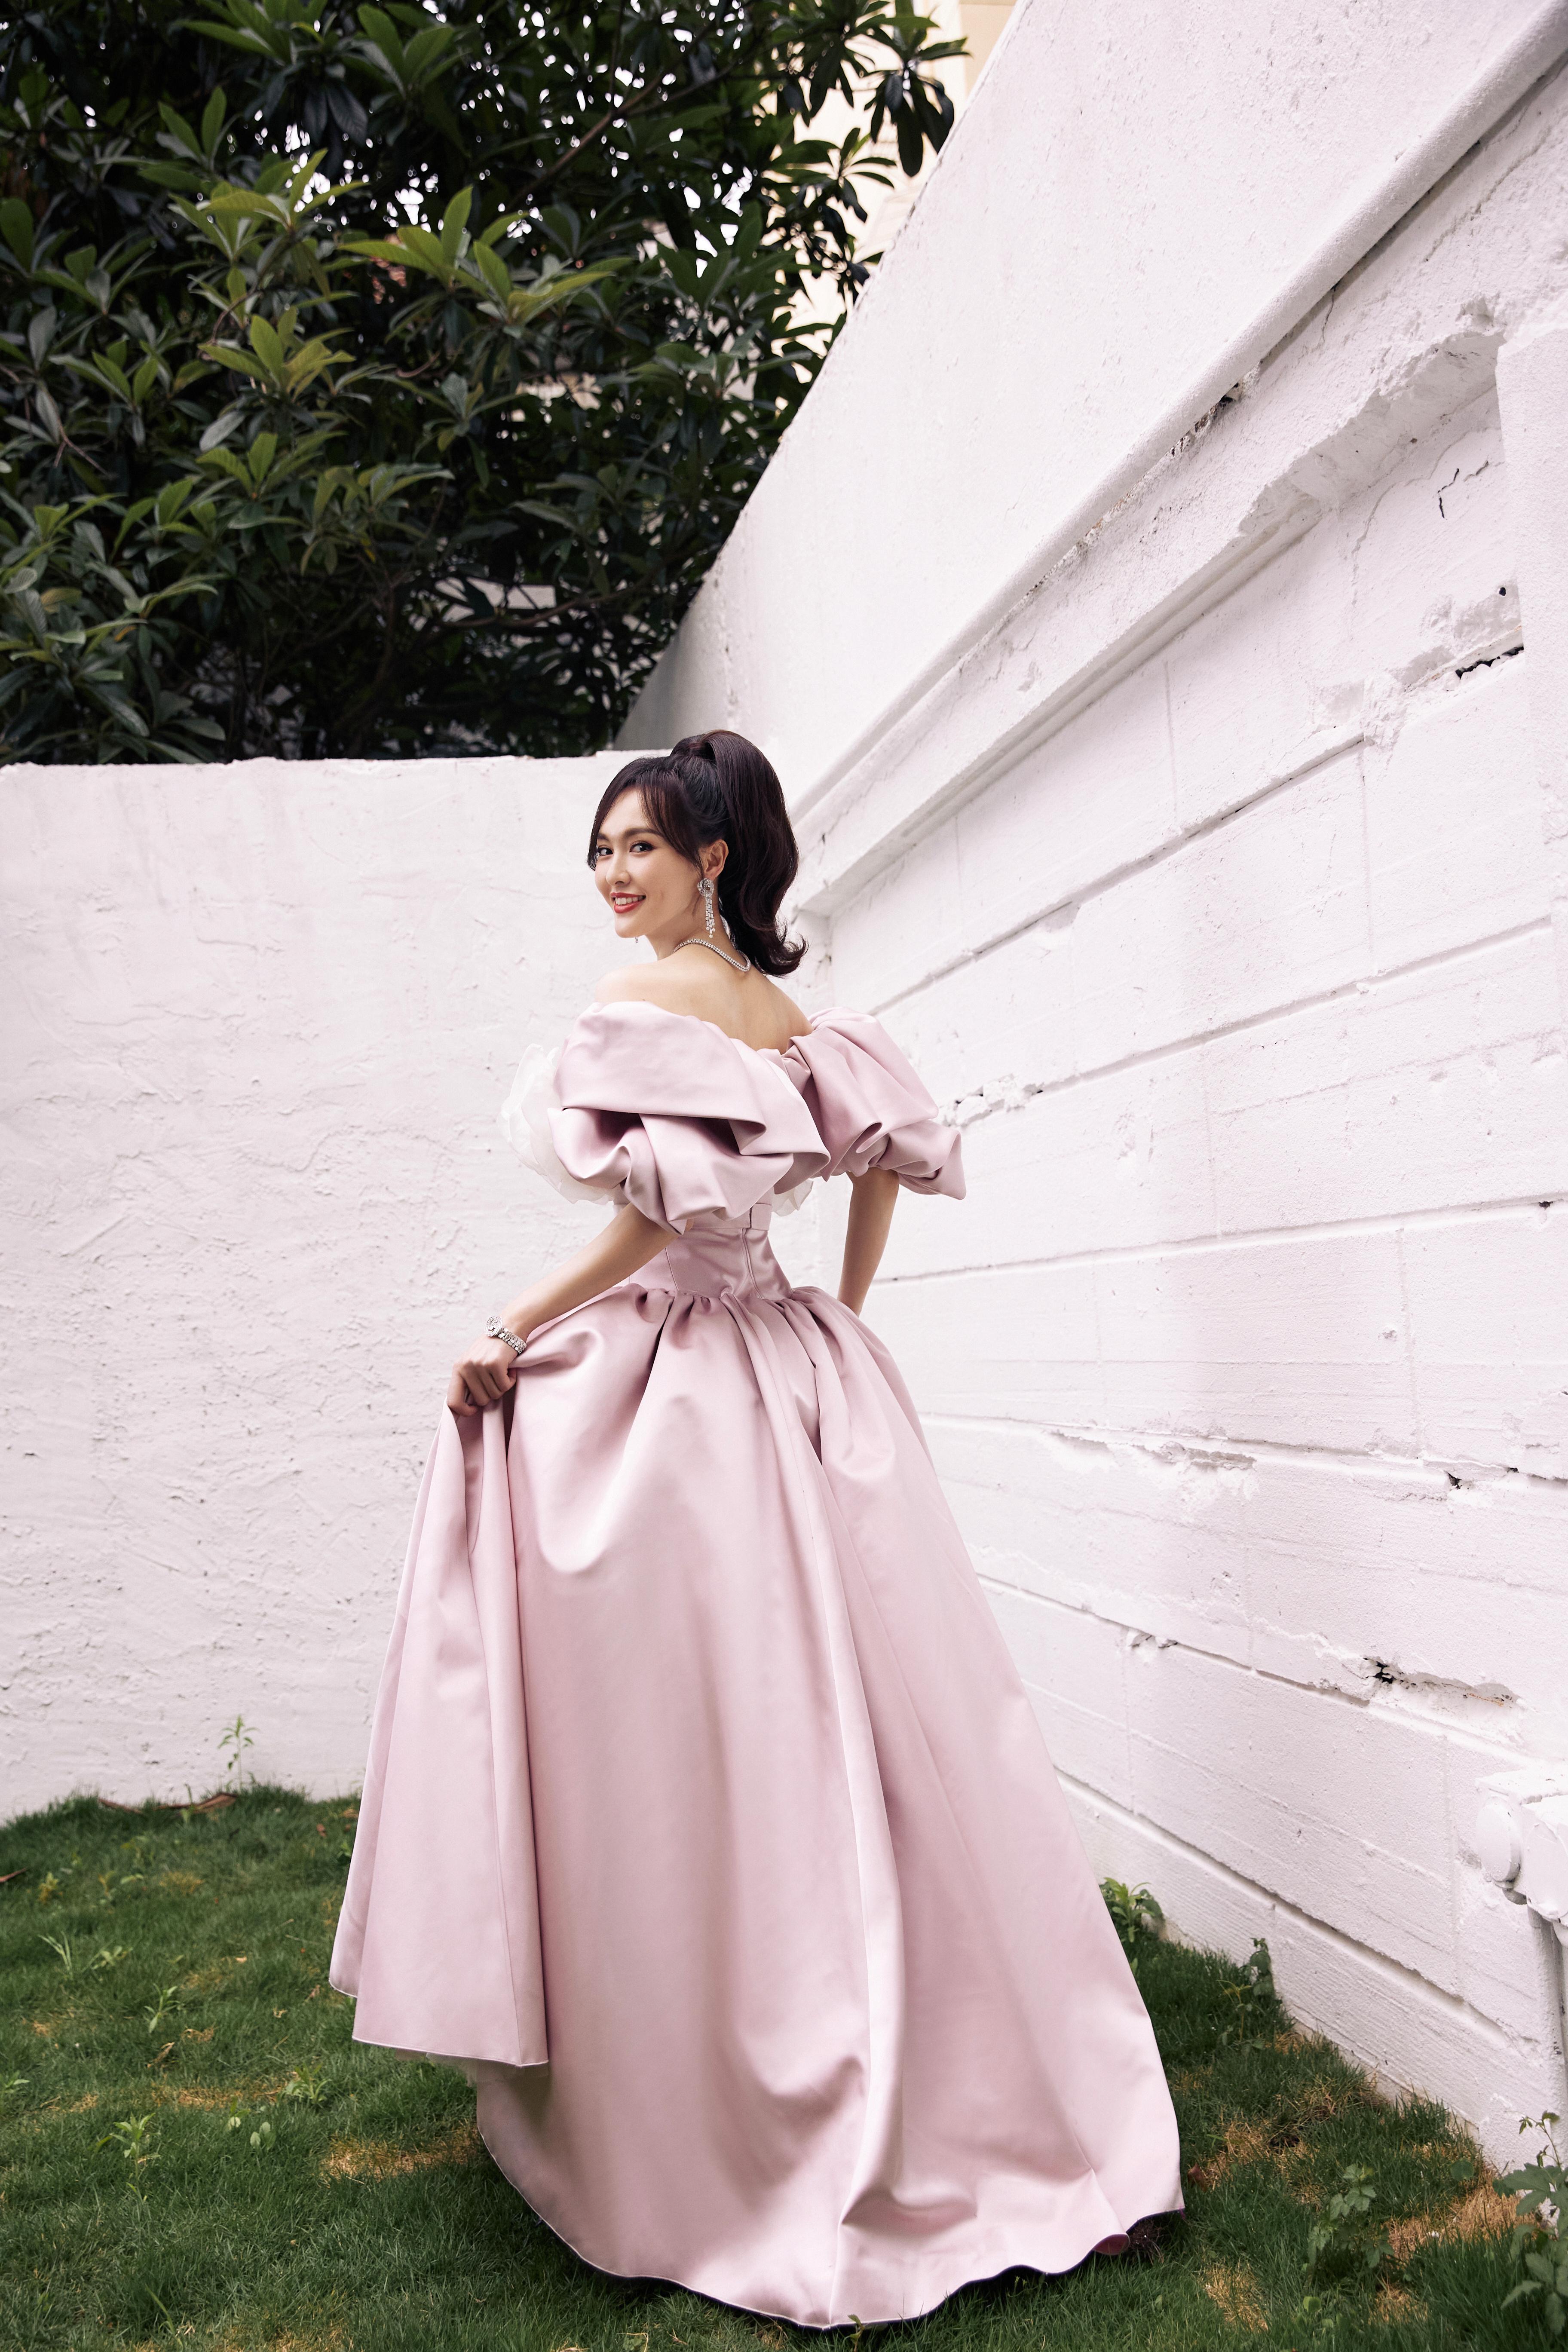 唐嫣粉色束腰裙造型复古优雅 白色大花朵点缀温柔甜美,1 (2)